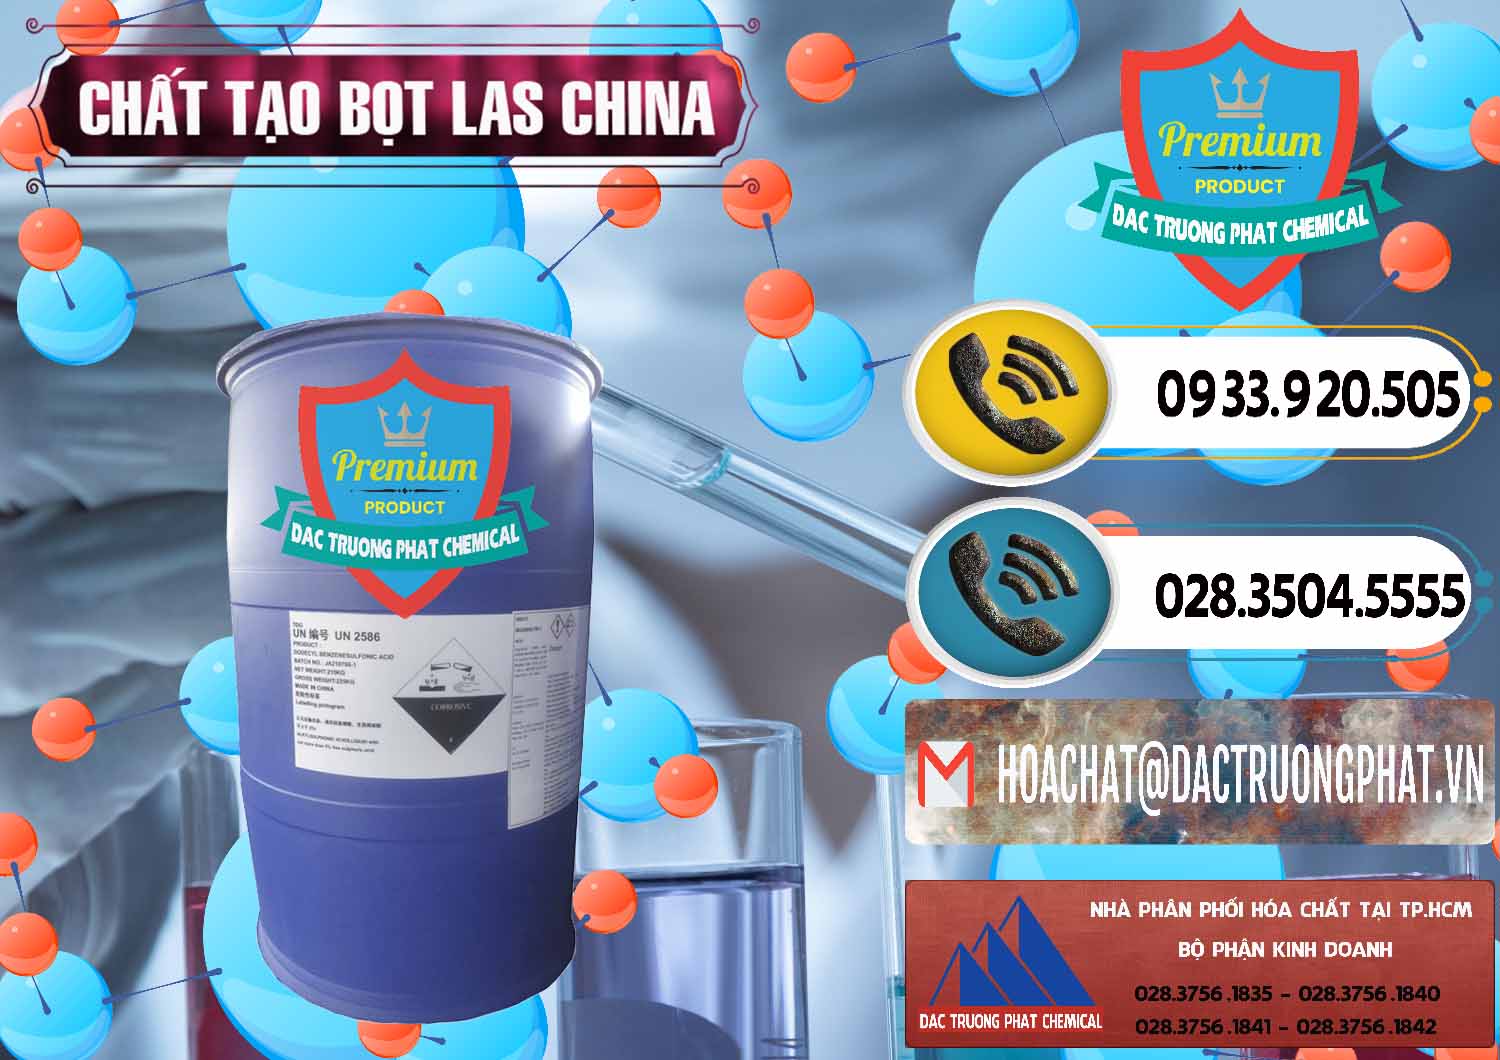 Nhà nhập khẩu & bán Chất tạo bọt Las Trung Quốc China - 0451 - Công ty chuyên kinh doanh ( phân phối ) hóa chất tại TP.HCM - hoachatdetnhuom.vn